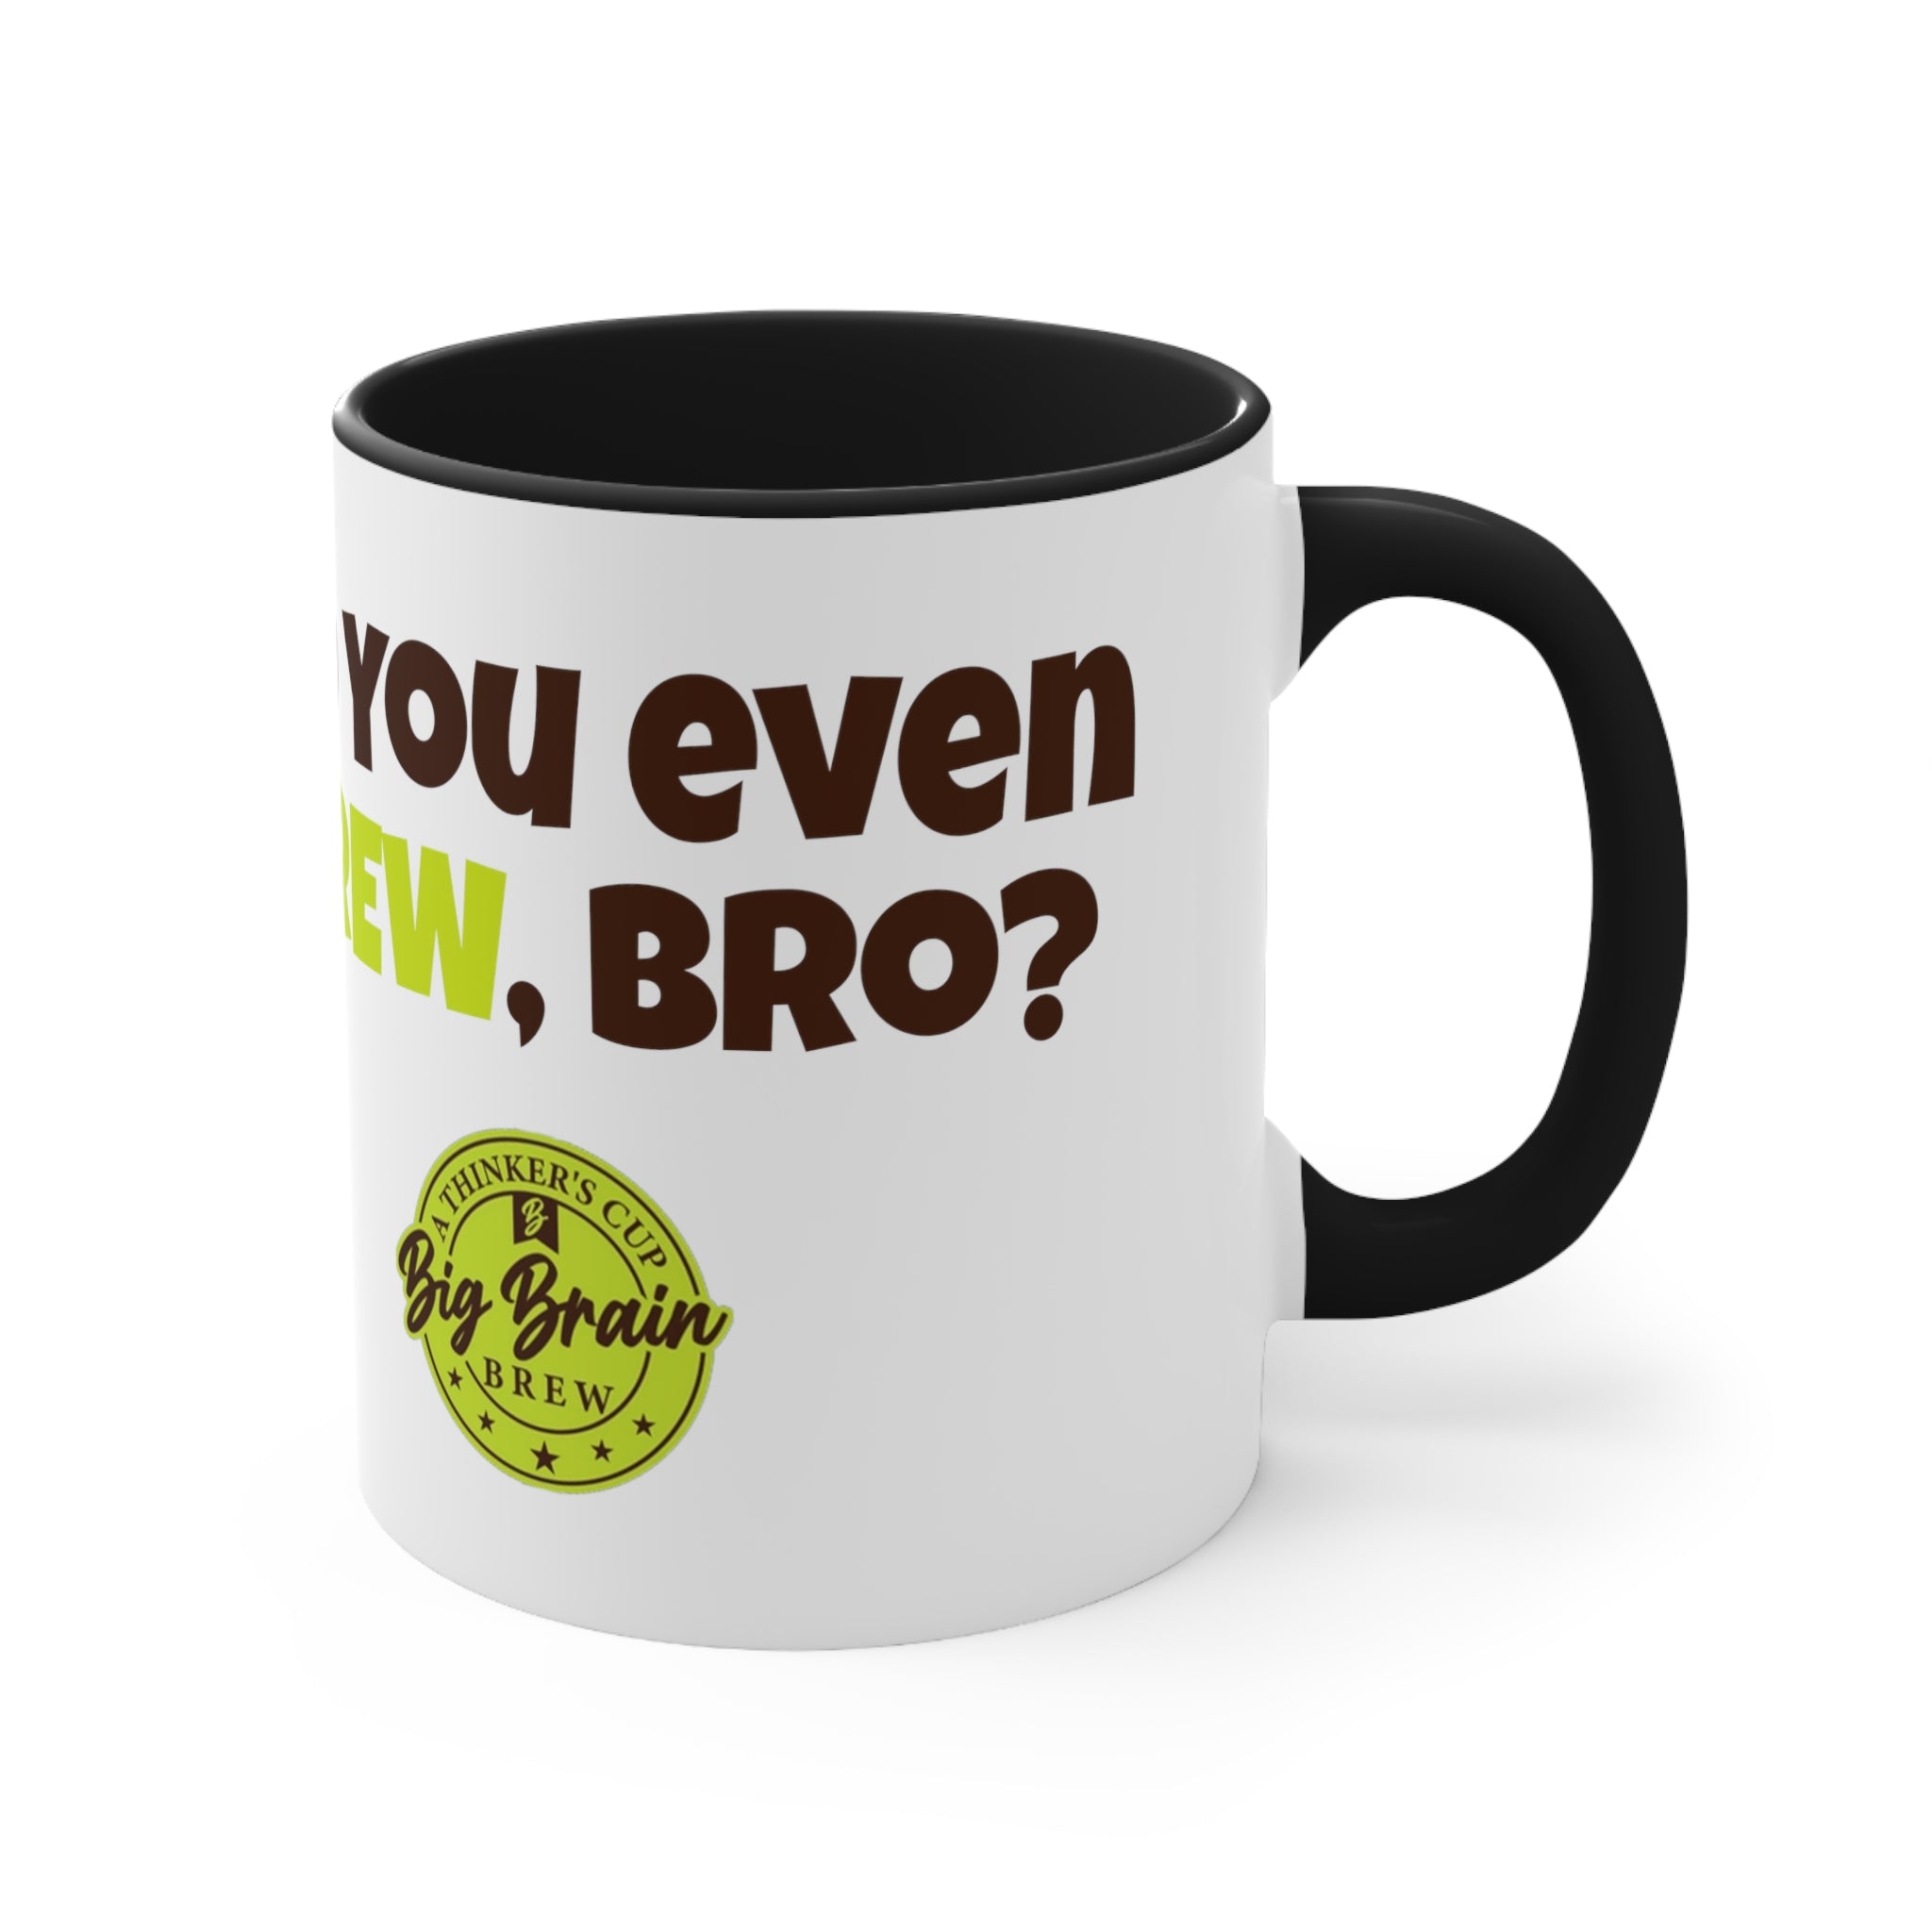 Do You Even Brew, Bro? Accent Coffee Mug, 11oz